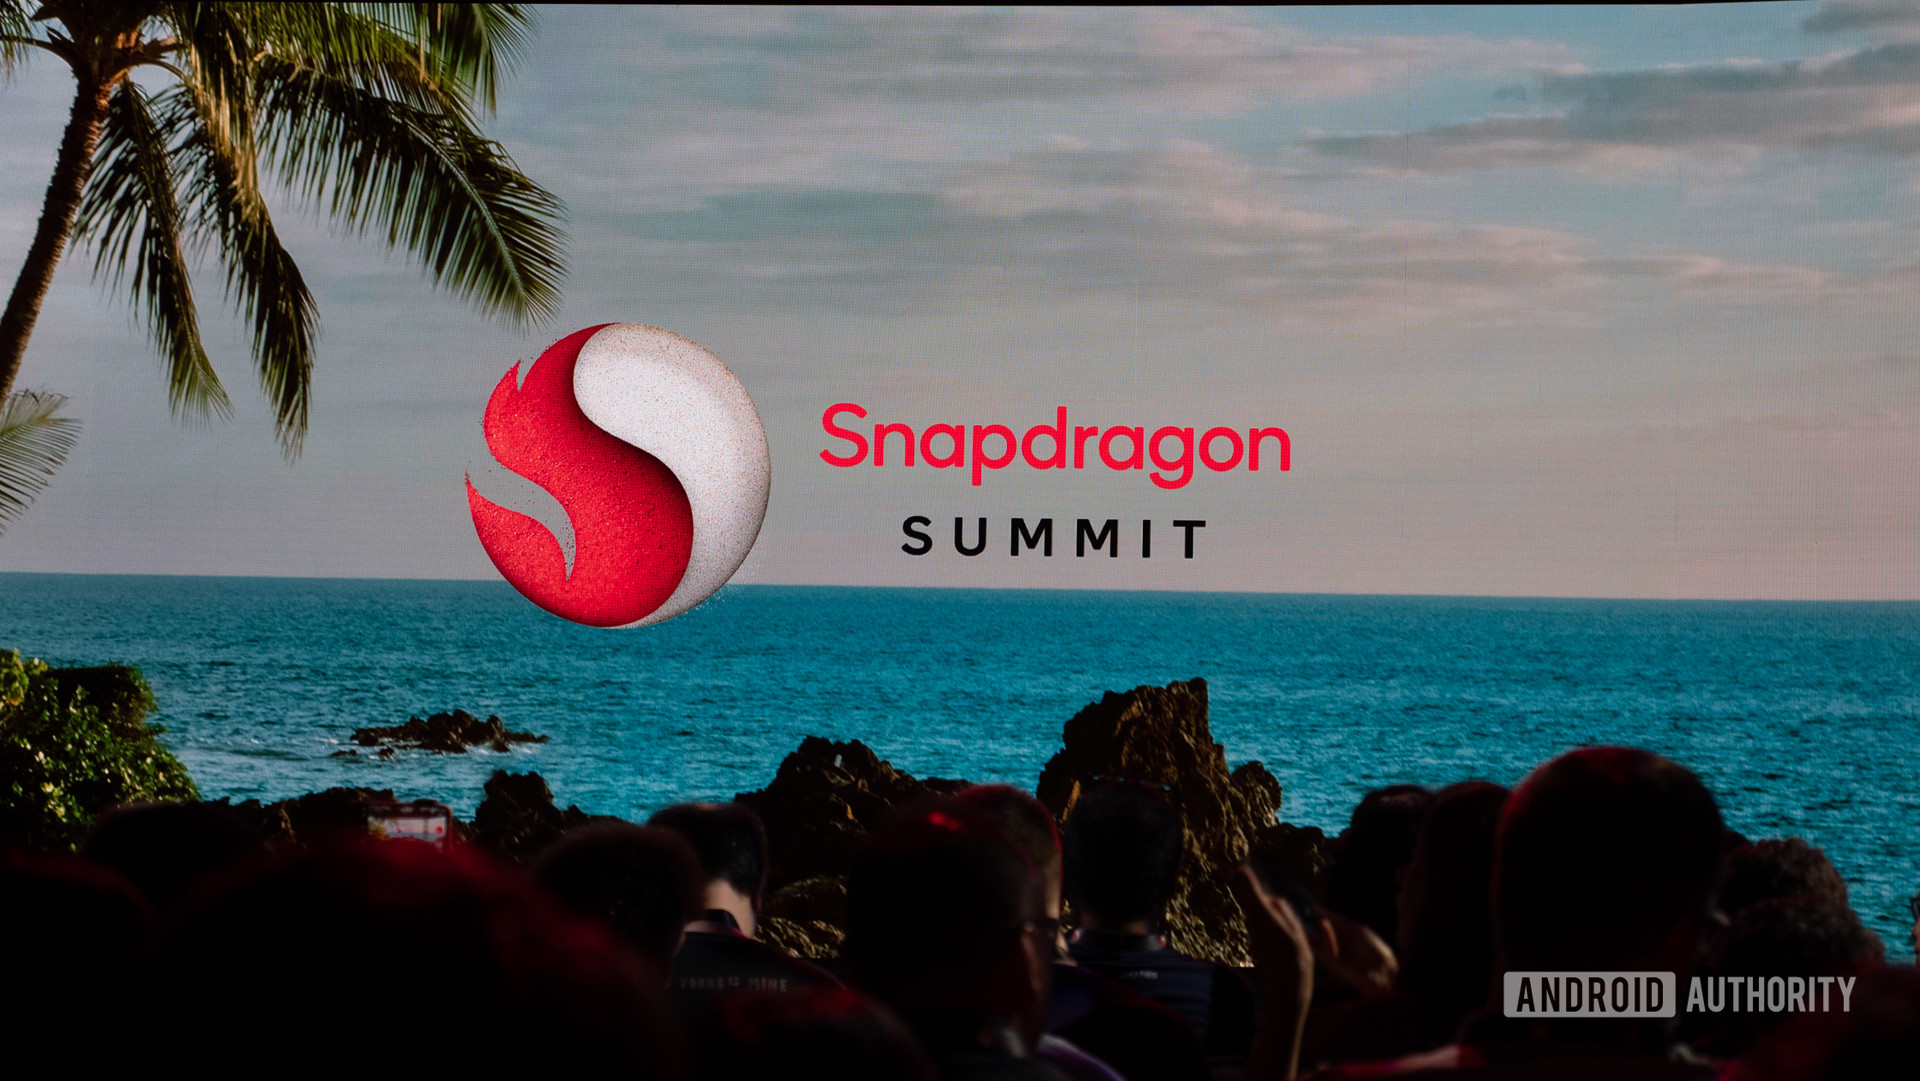 snapdragon summit keynote logo